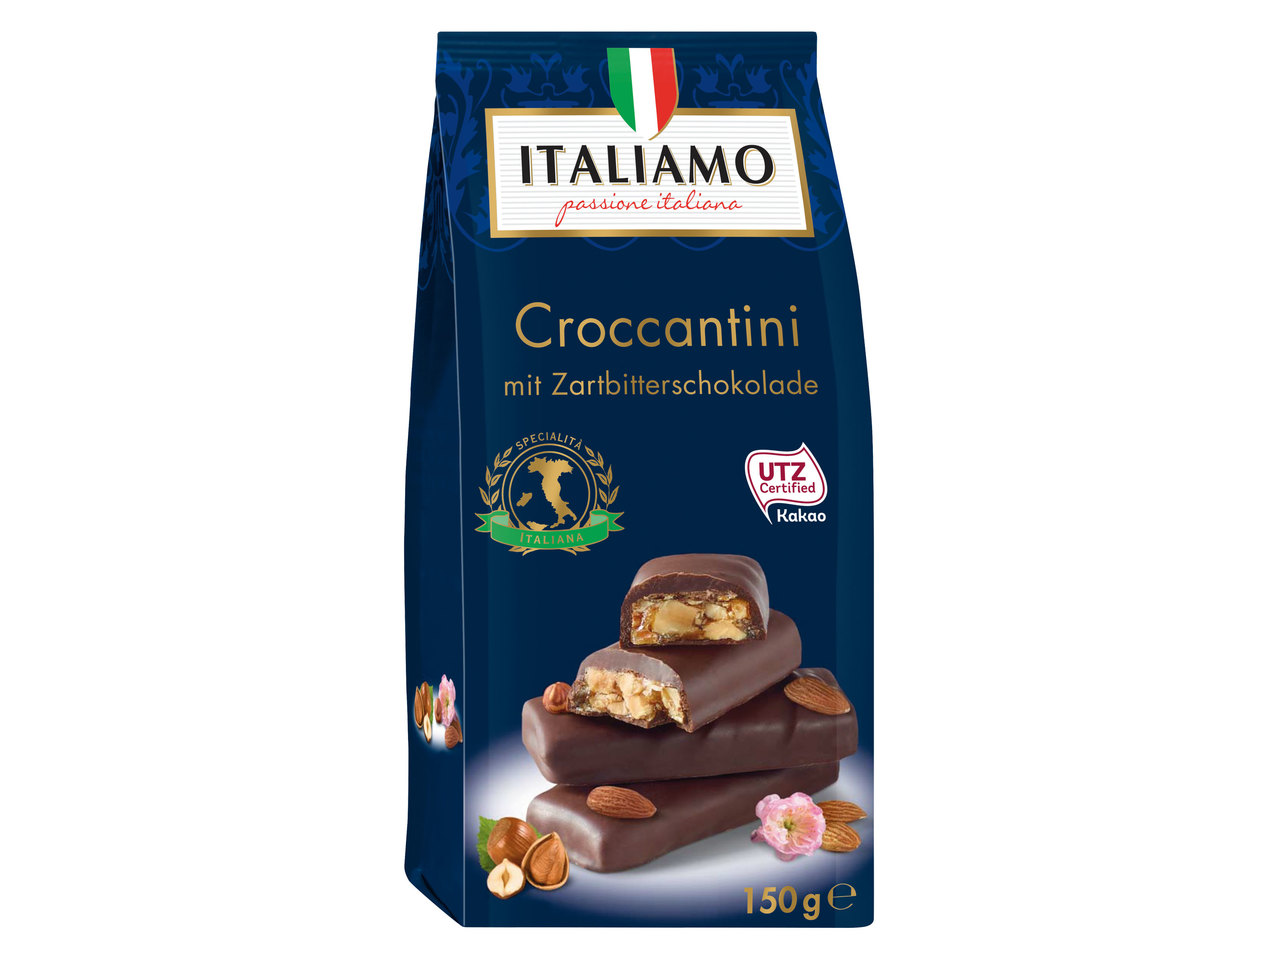 ITALIAMO Croccantini